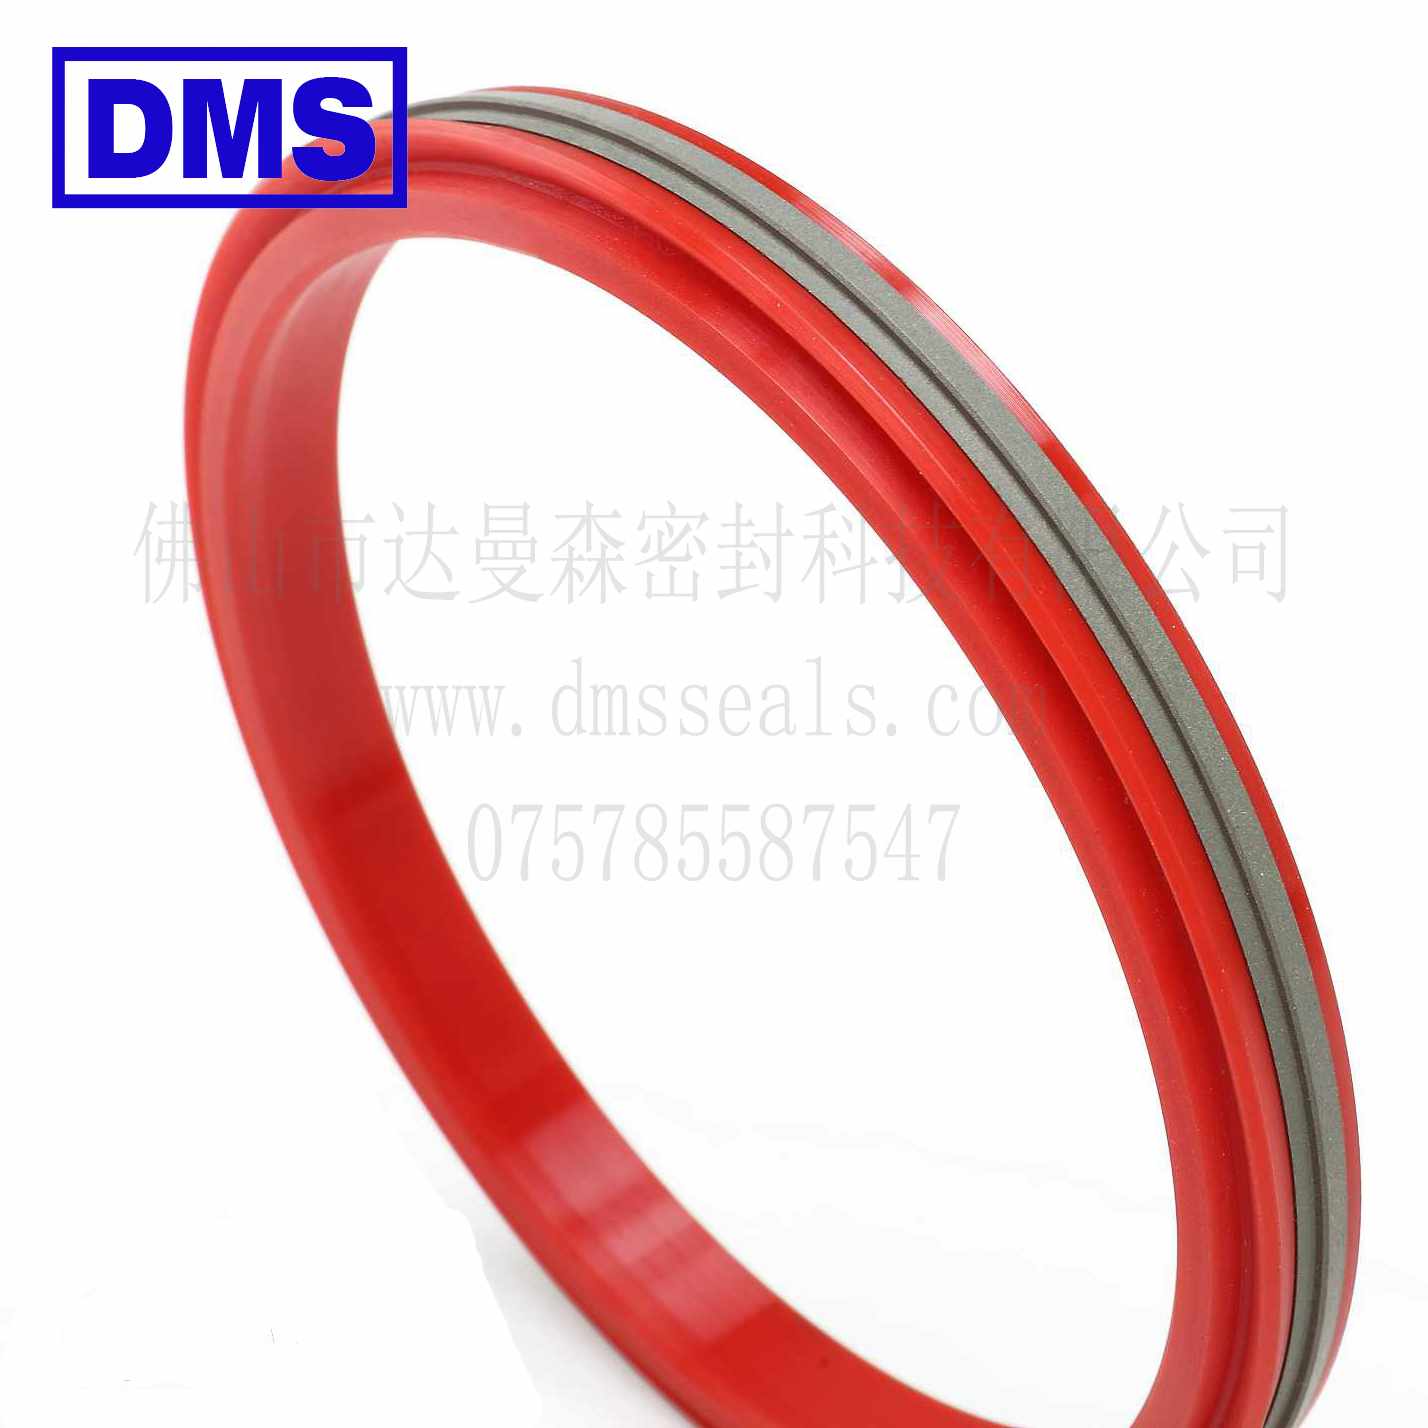 DMS Seal Manufacturer-o-ring seal | Piston Seals | DMS Seal Manufacturer-3